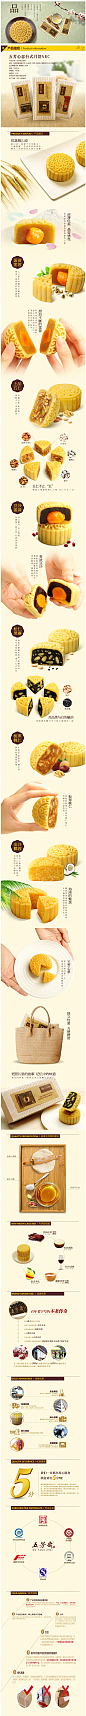 月饼 五芳斋中秋月饼礼盒  详情页 描述页 食品